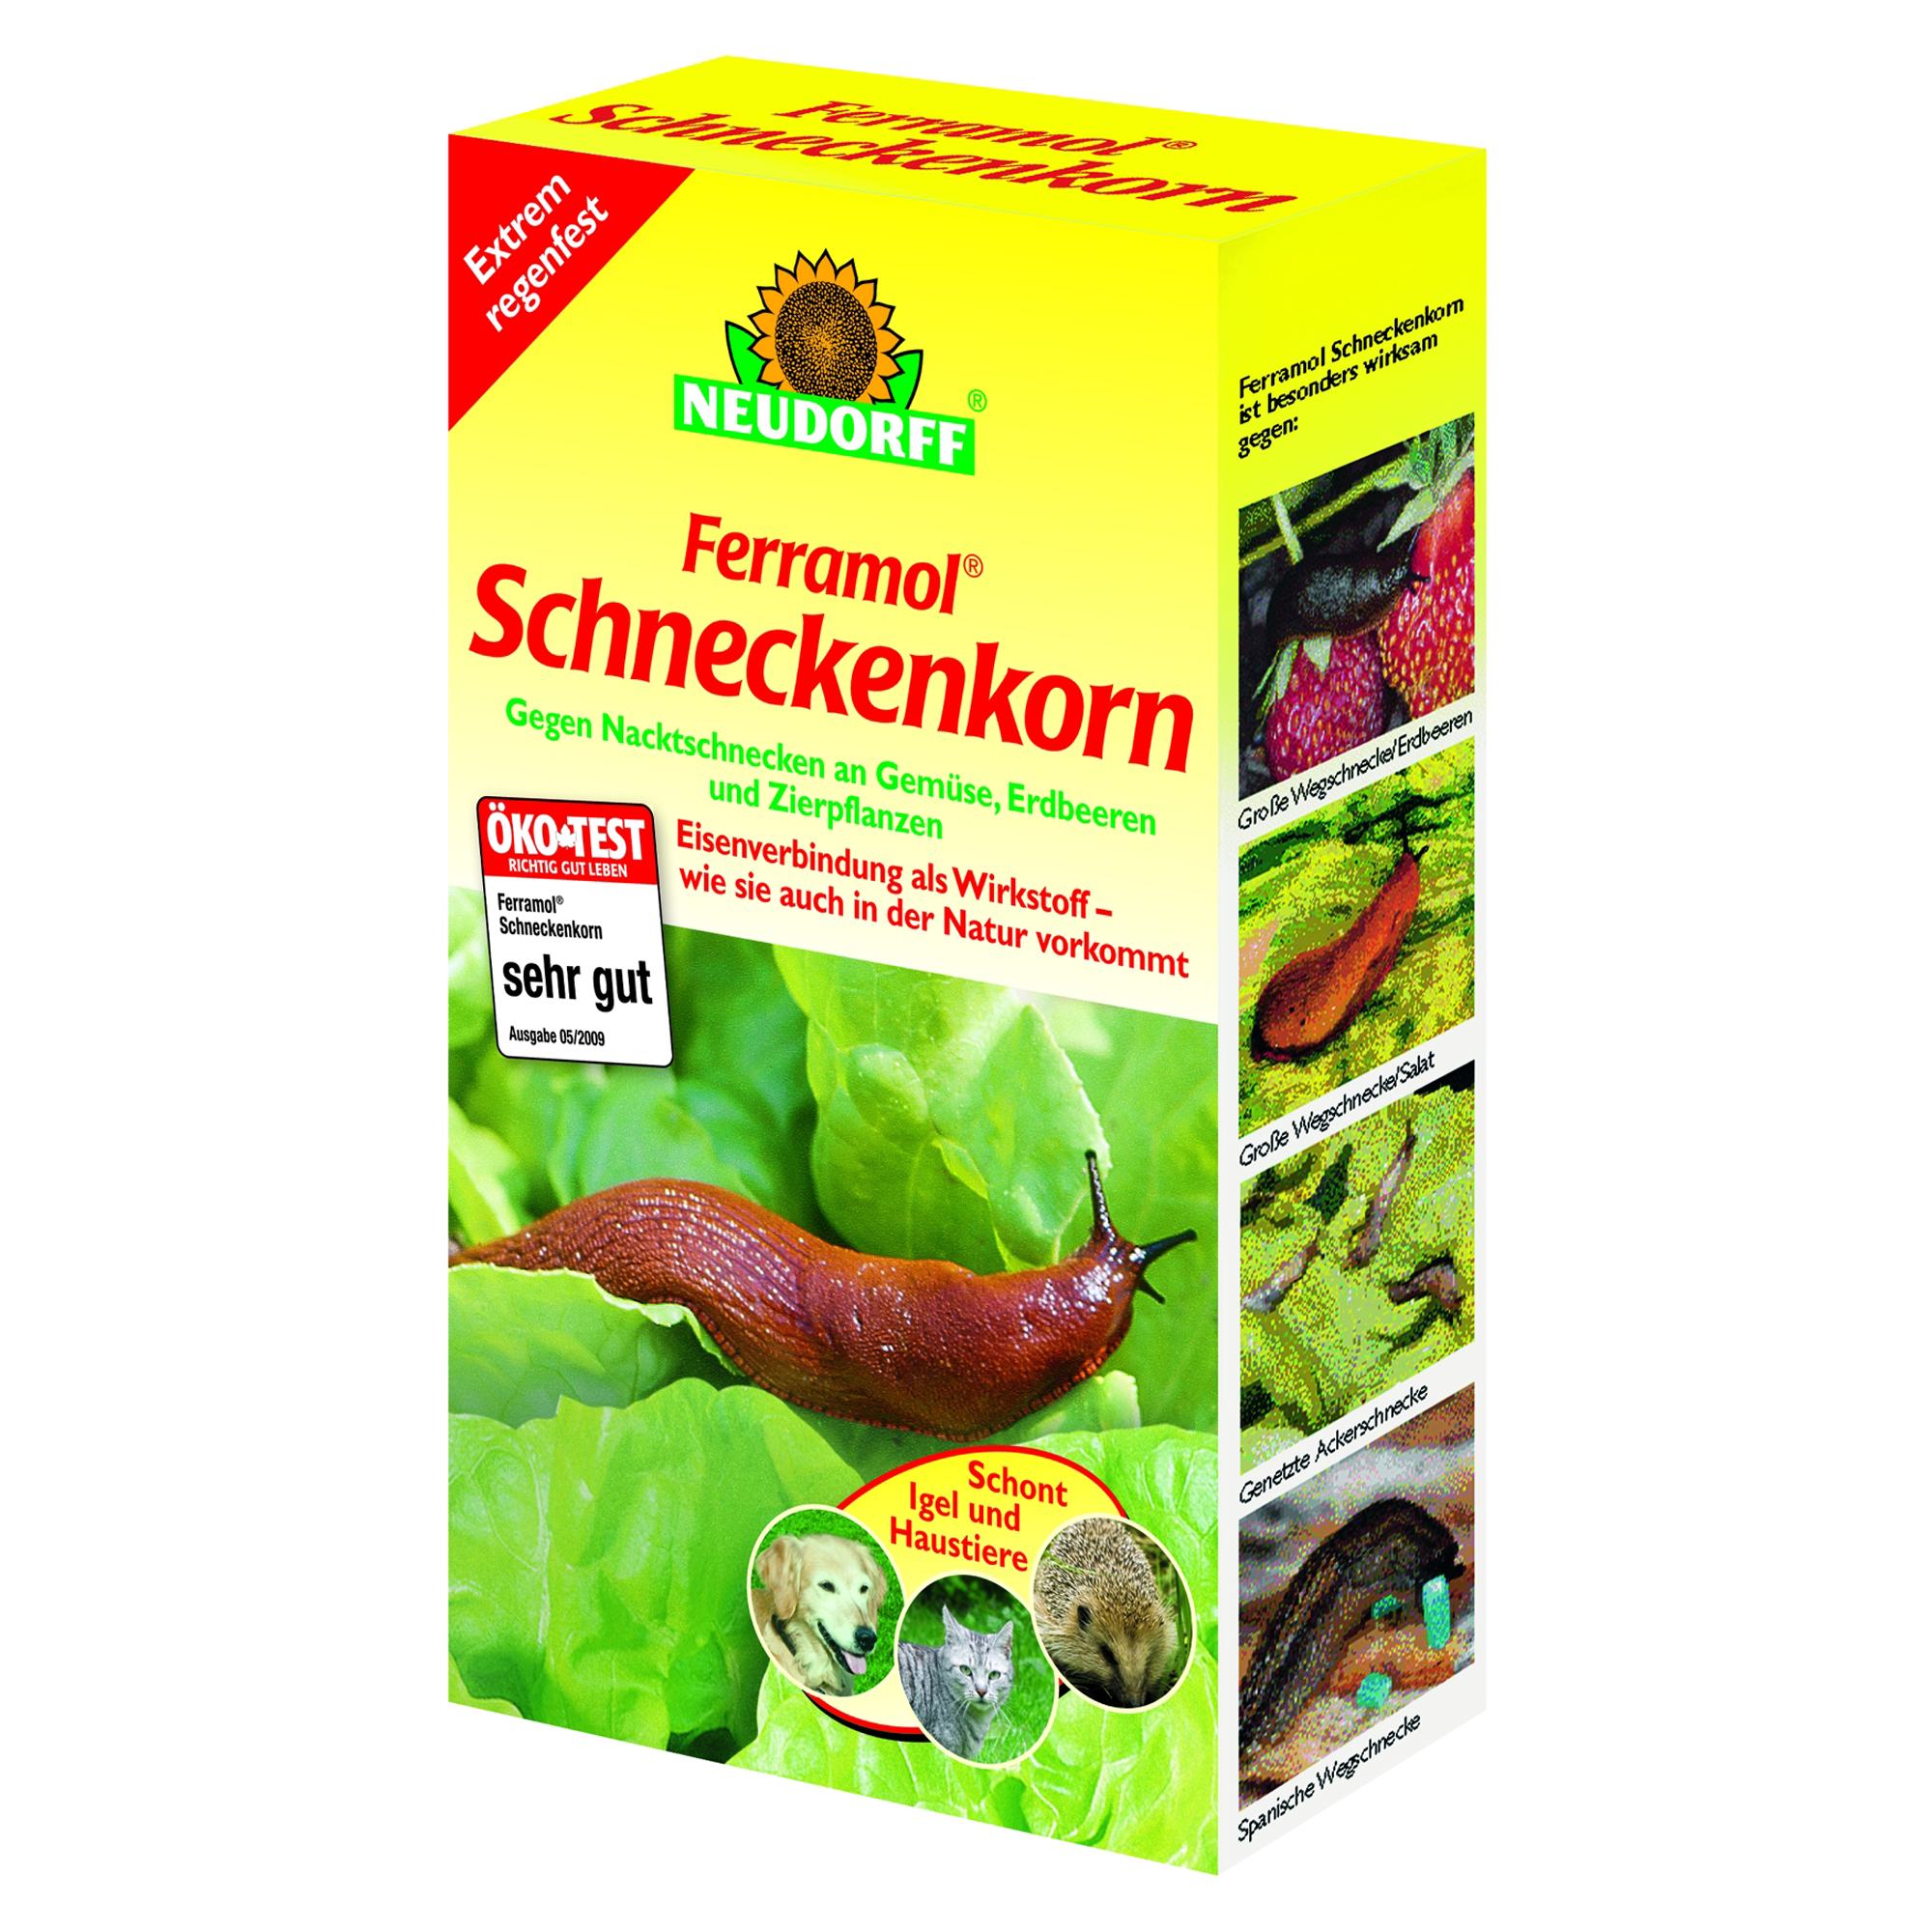 Schneckenkorn 'Ferramol' 500 g + product picture